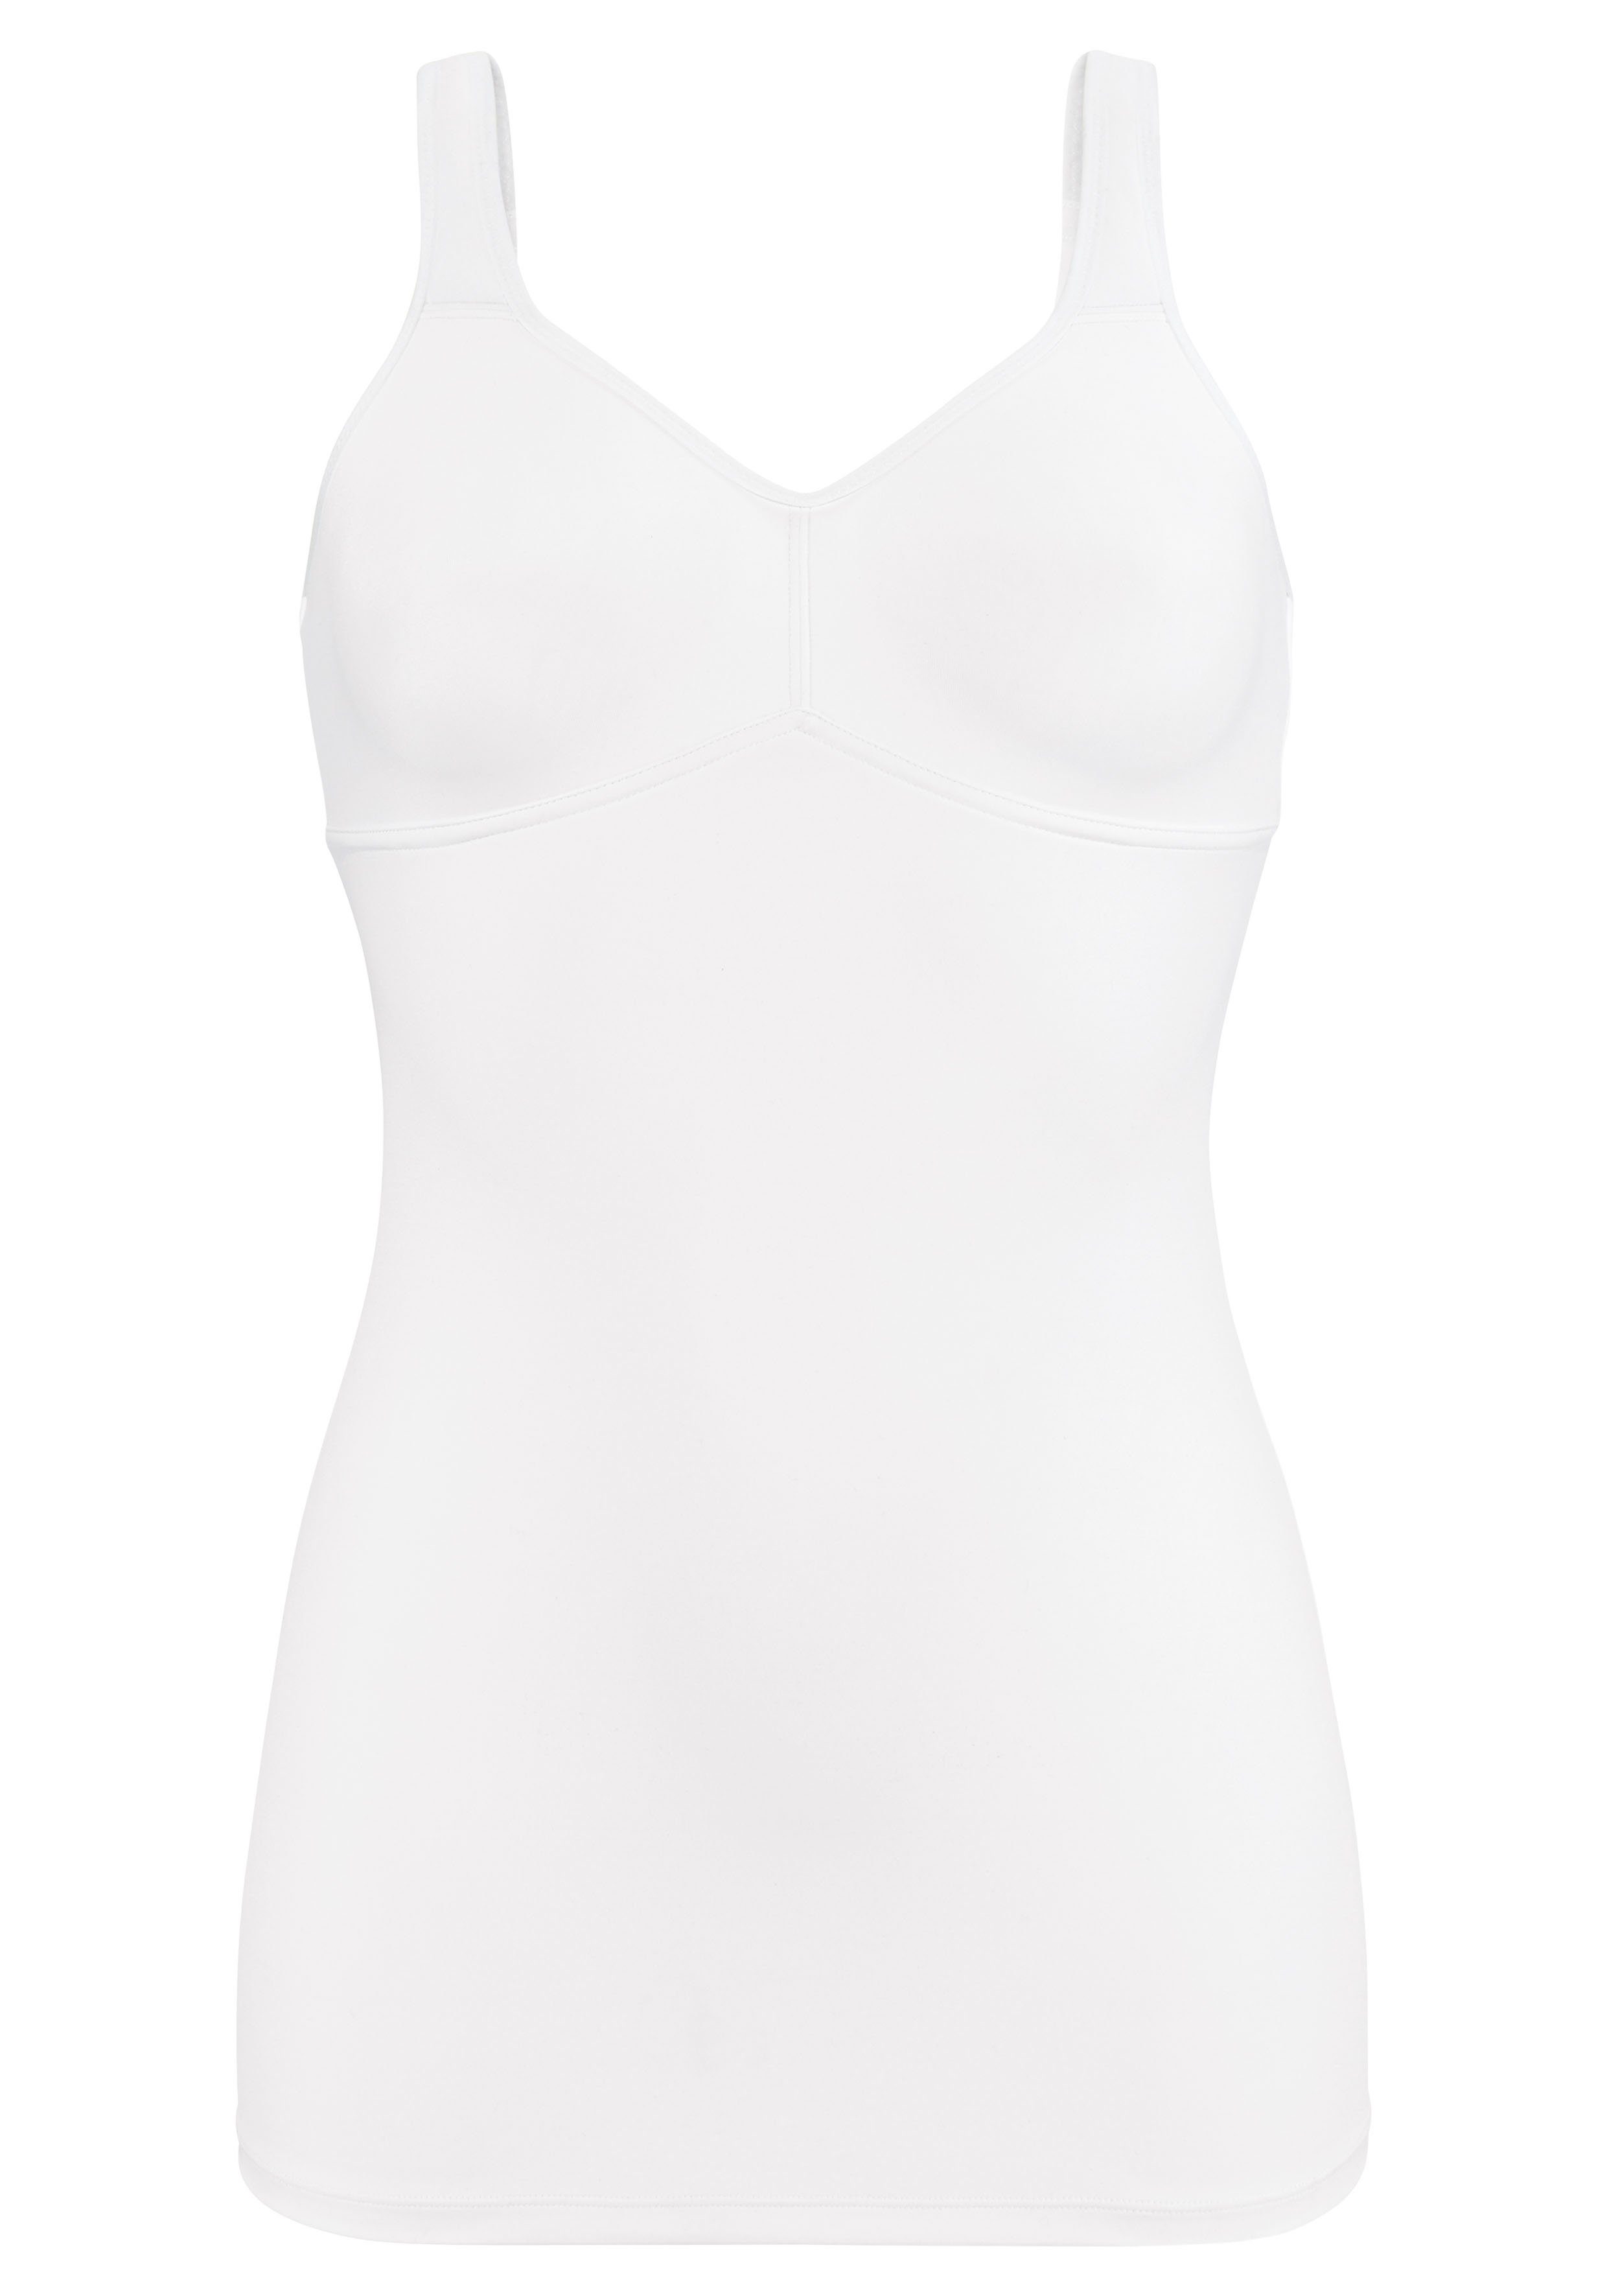 Bügel mit LASCANA BH-Hemd weiß Rückenverschluss, Basic Dessous ohne